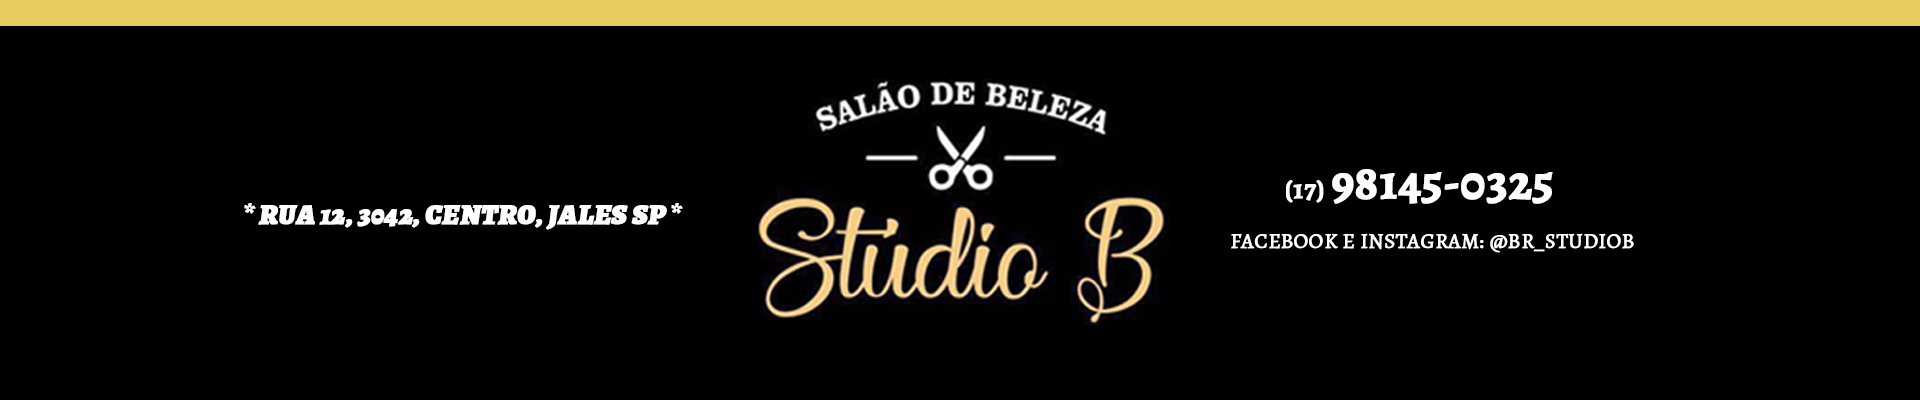 Studio B - Salão de Beleza